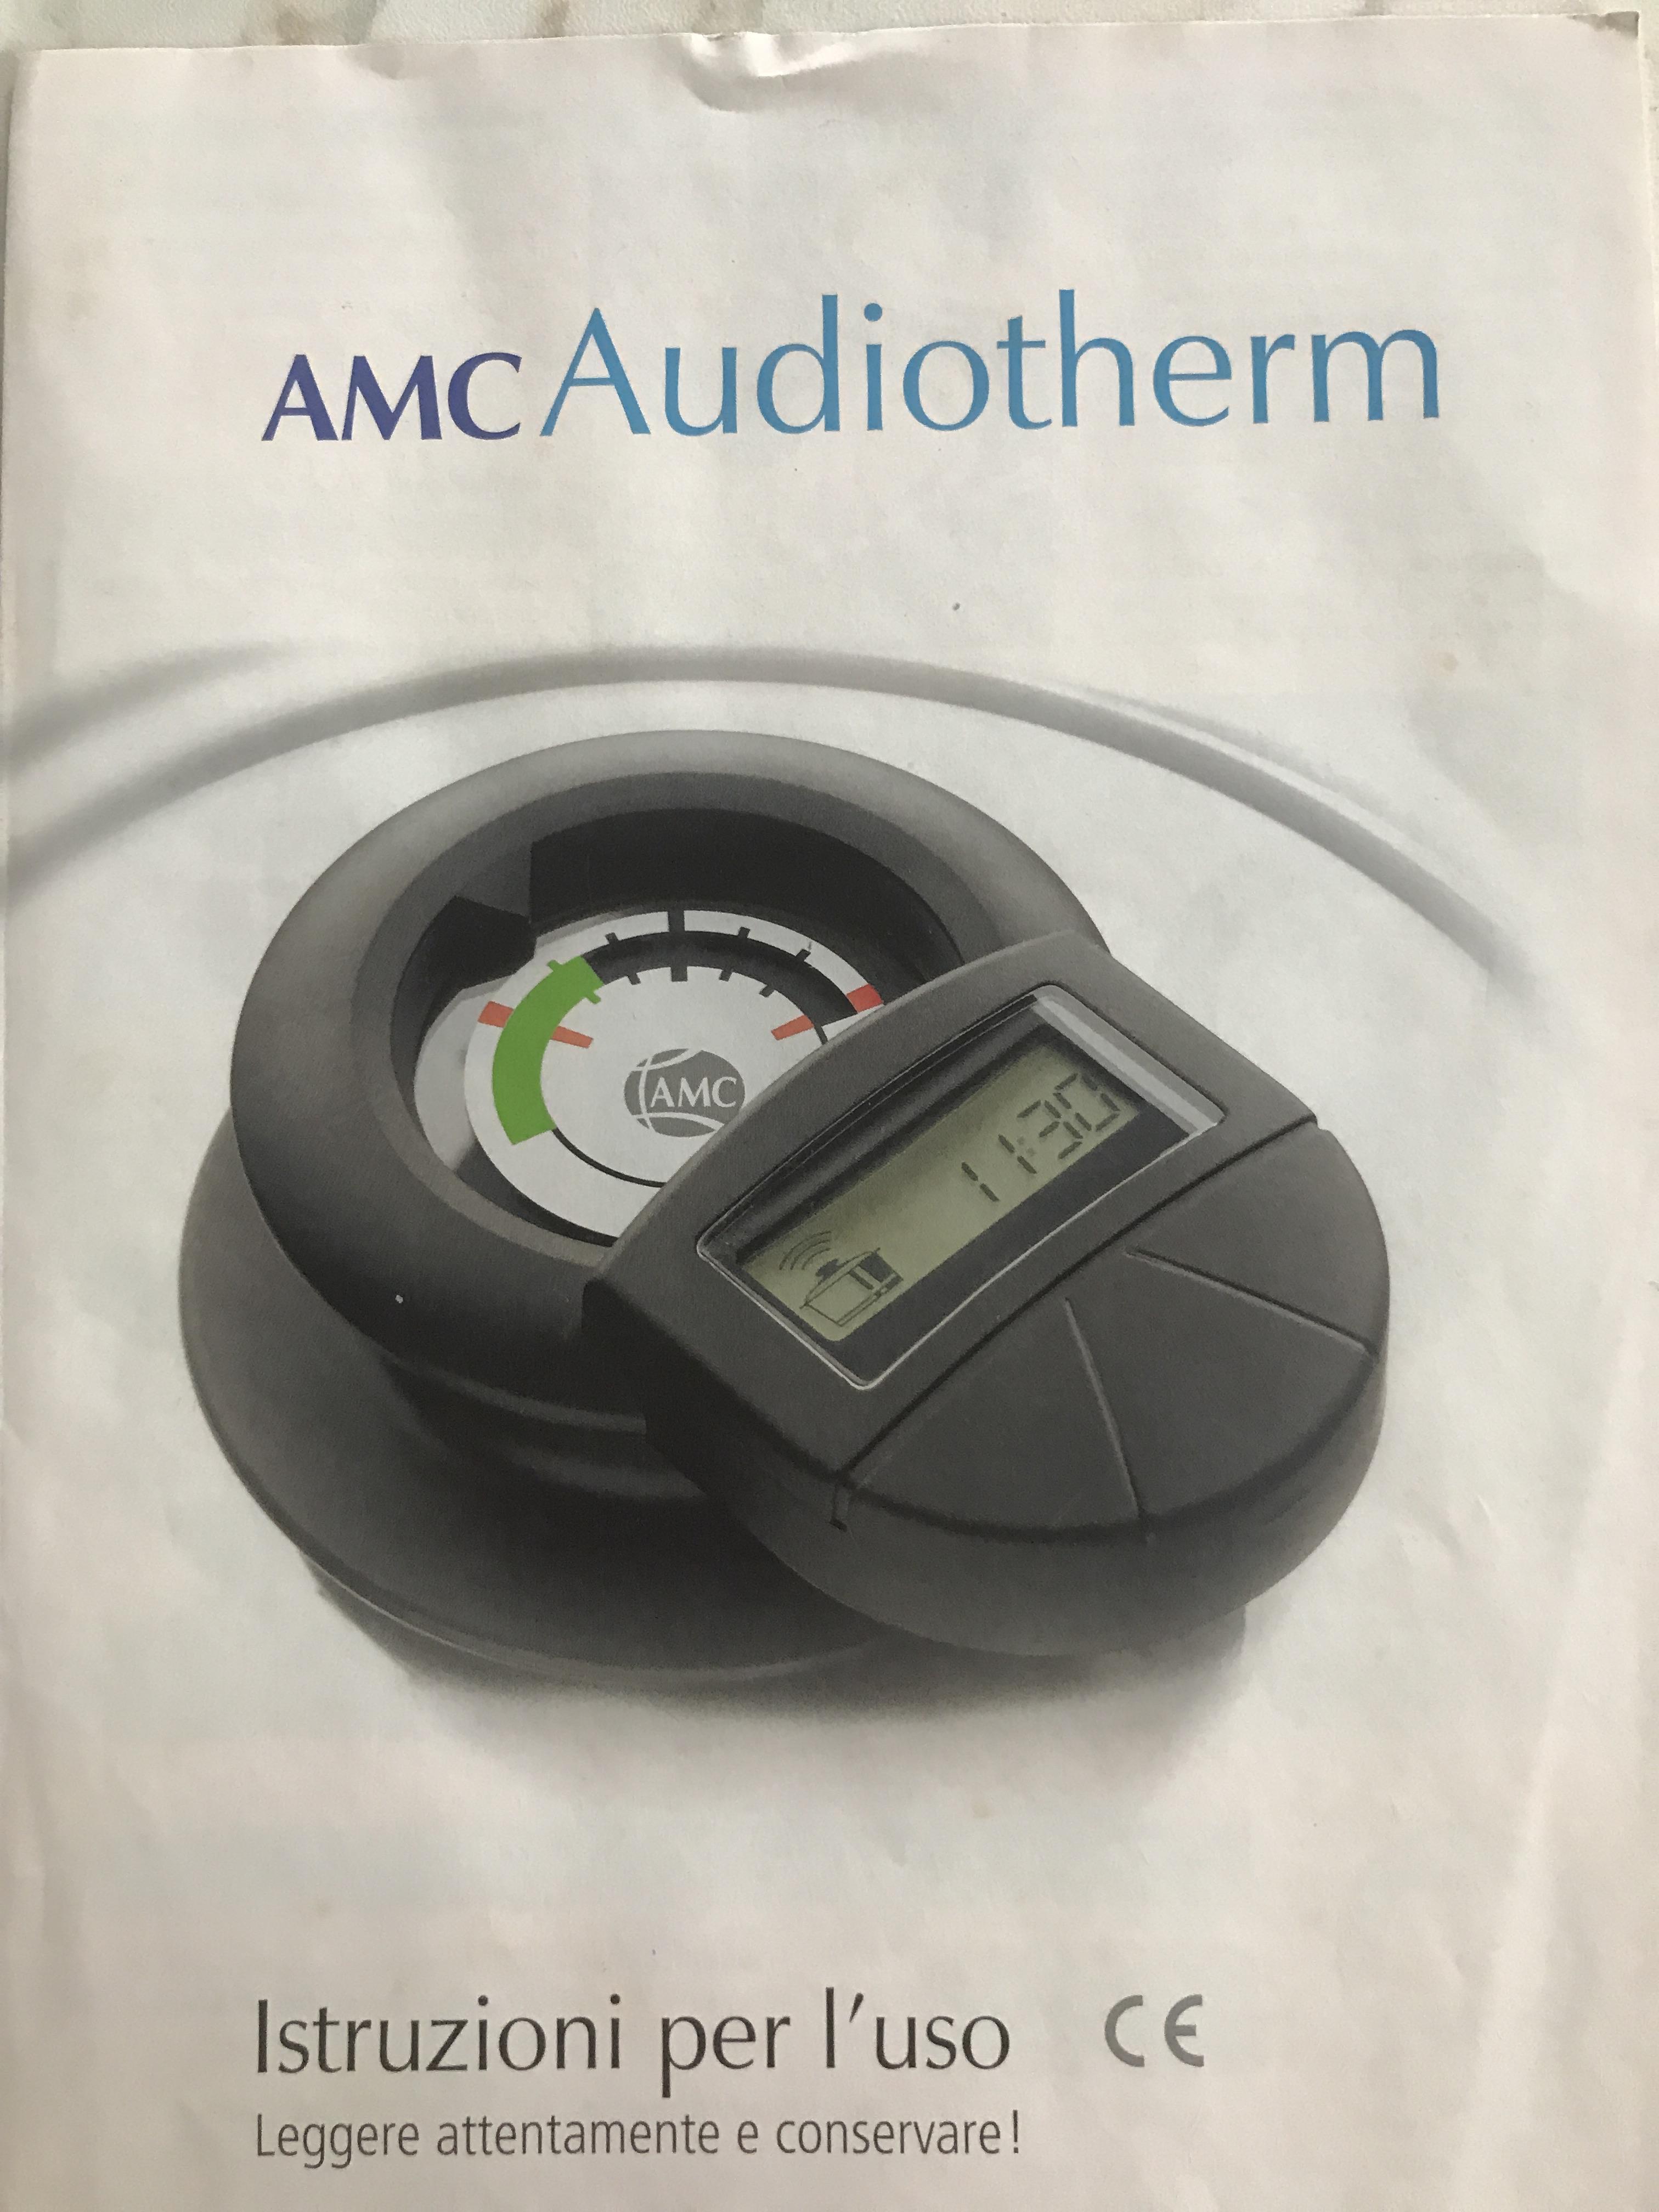 Audiotherm